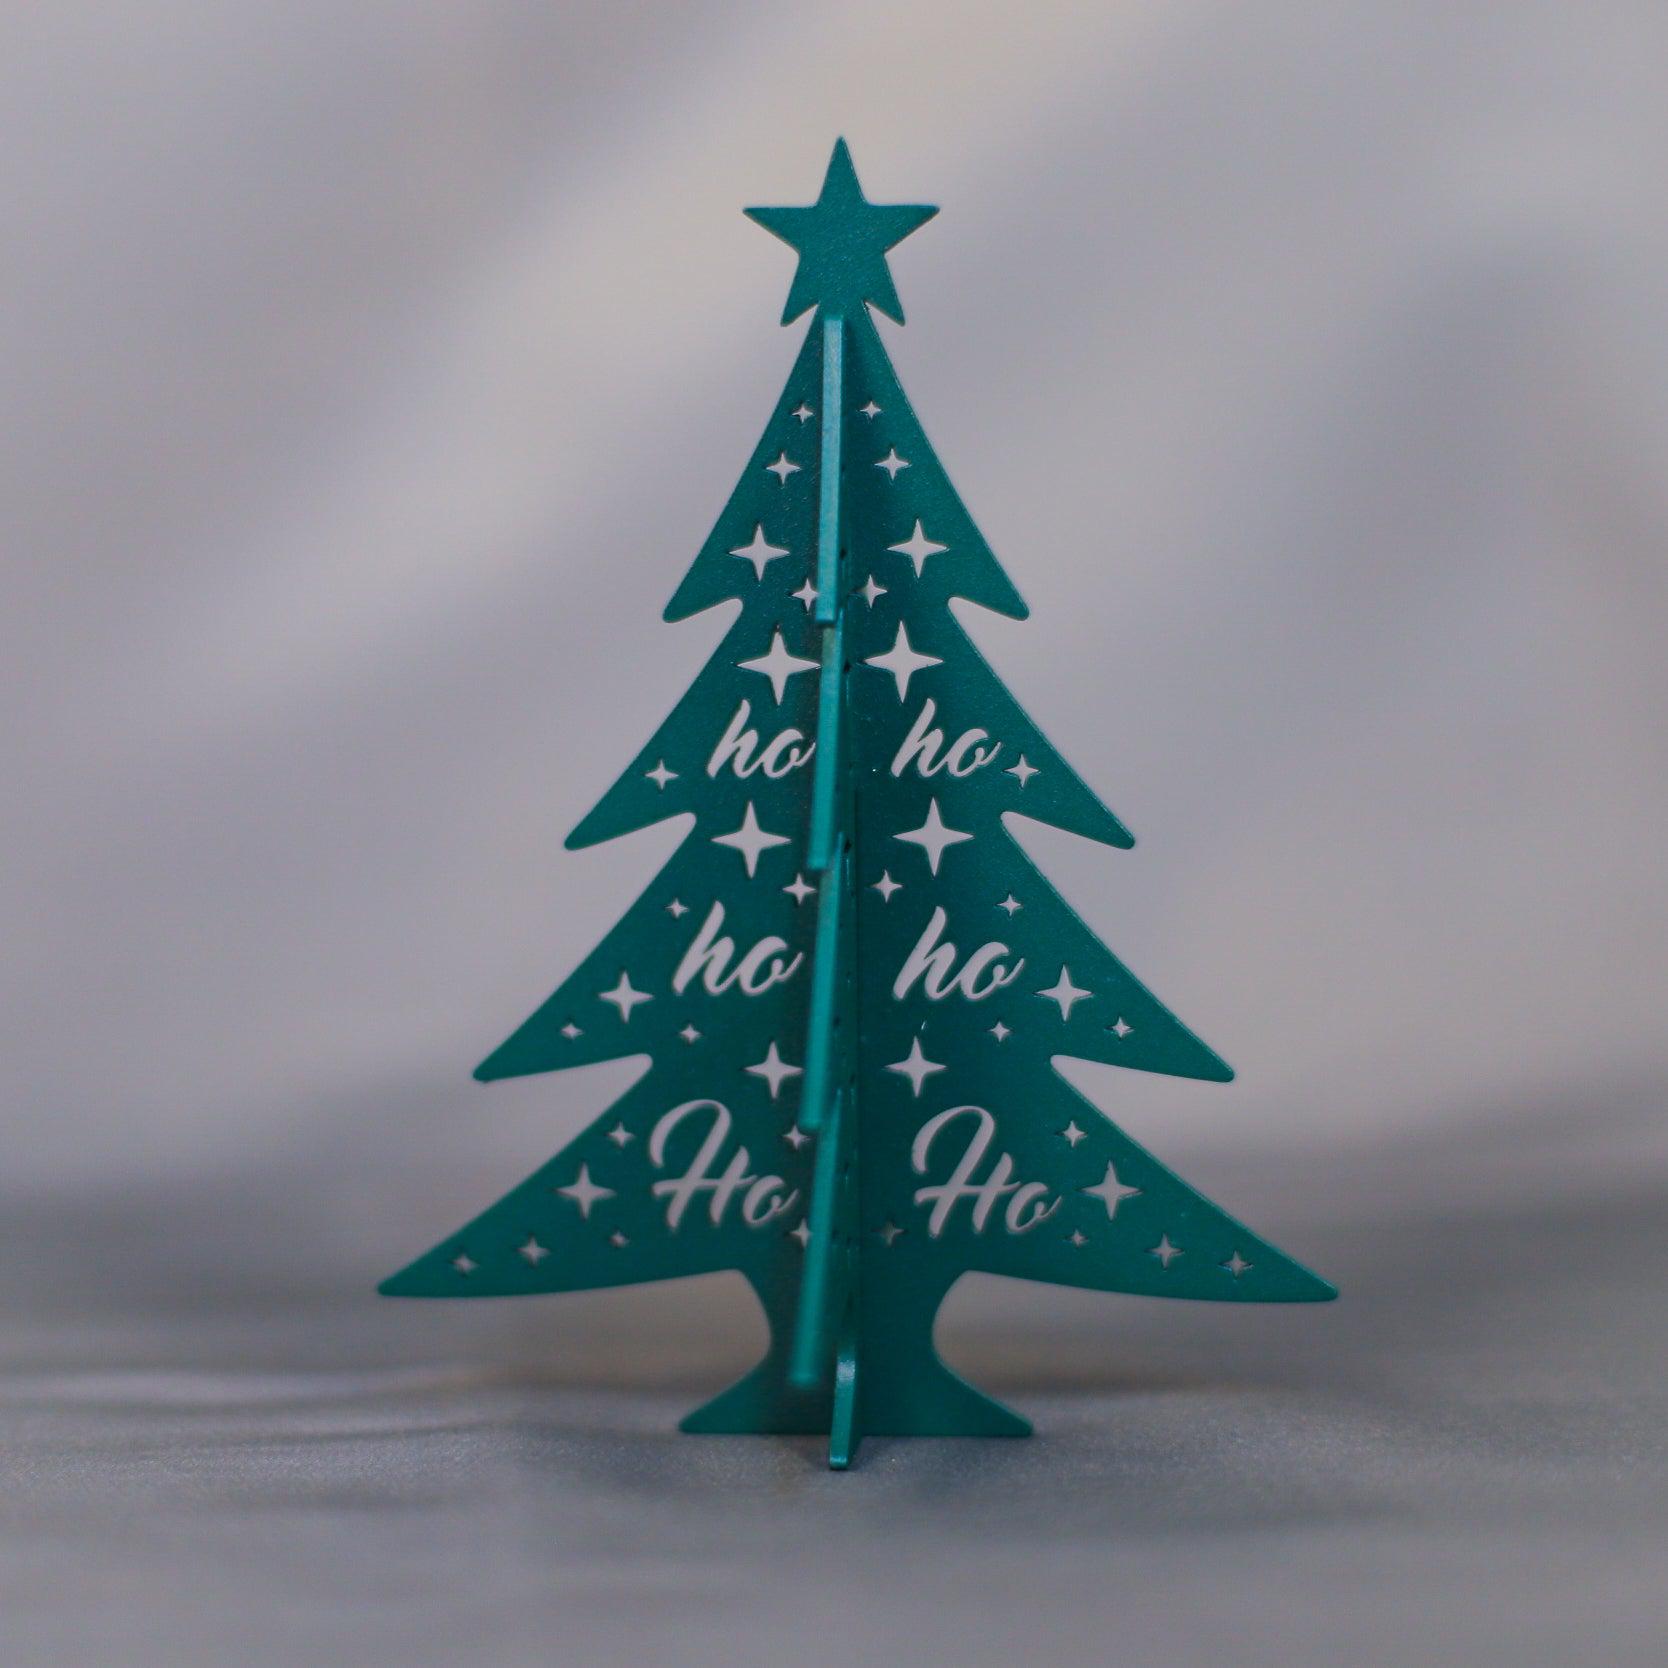 Plaque métallique Steelmonks, set de Noël 3 pièces. Set de décoration murale de Noël disponible en différentes tailles et couleurs.